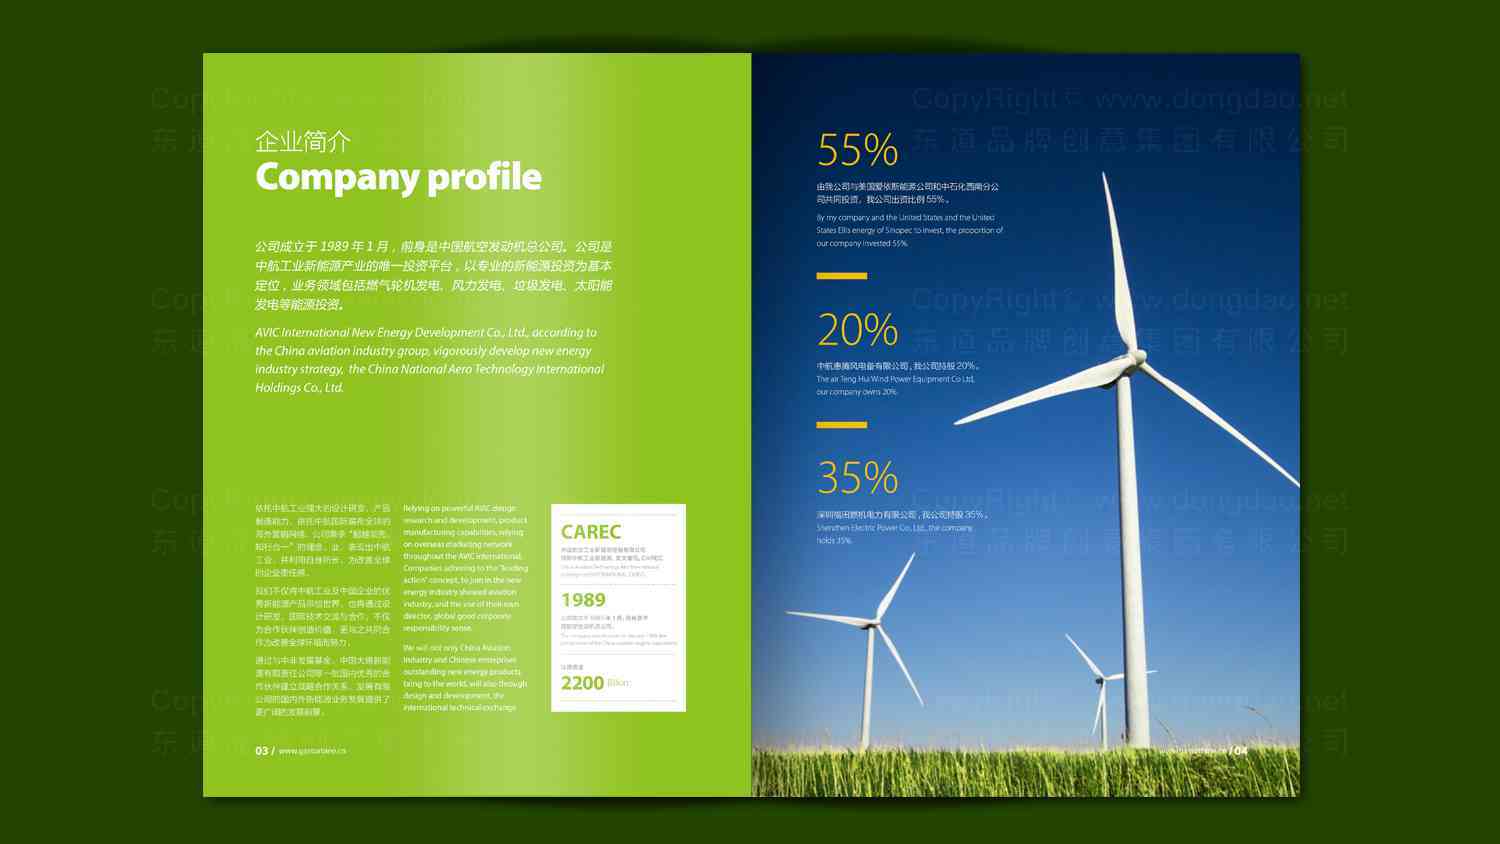 中航新能源公司宣传册设计图片素材